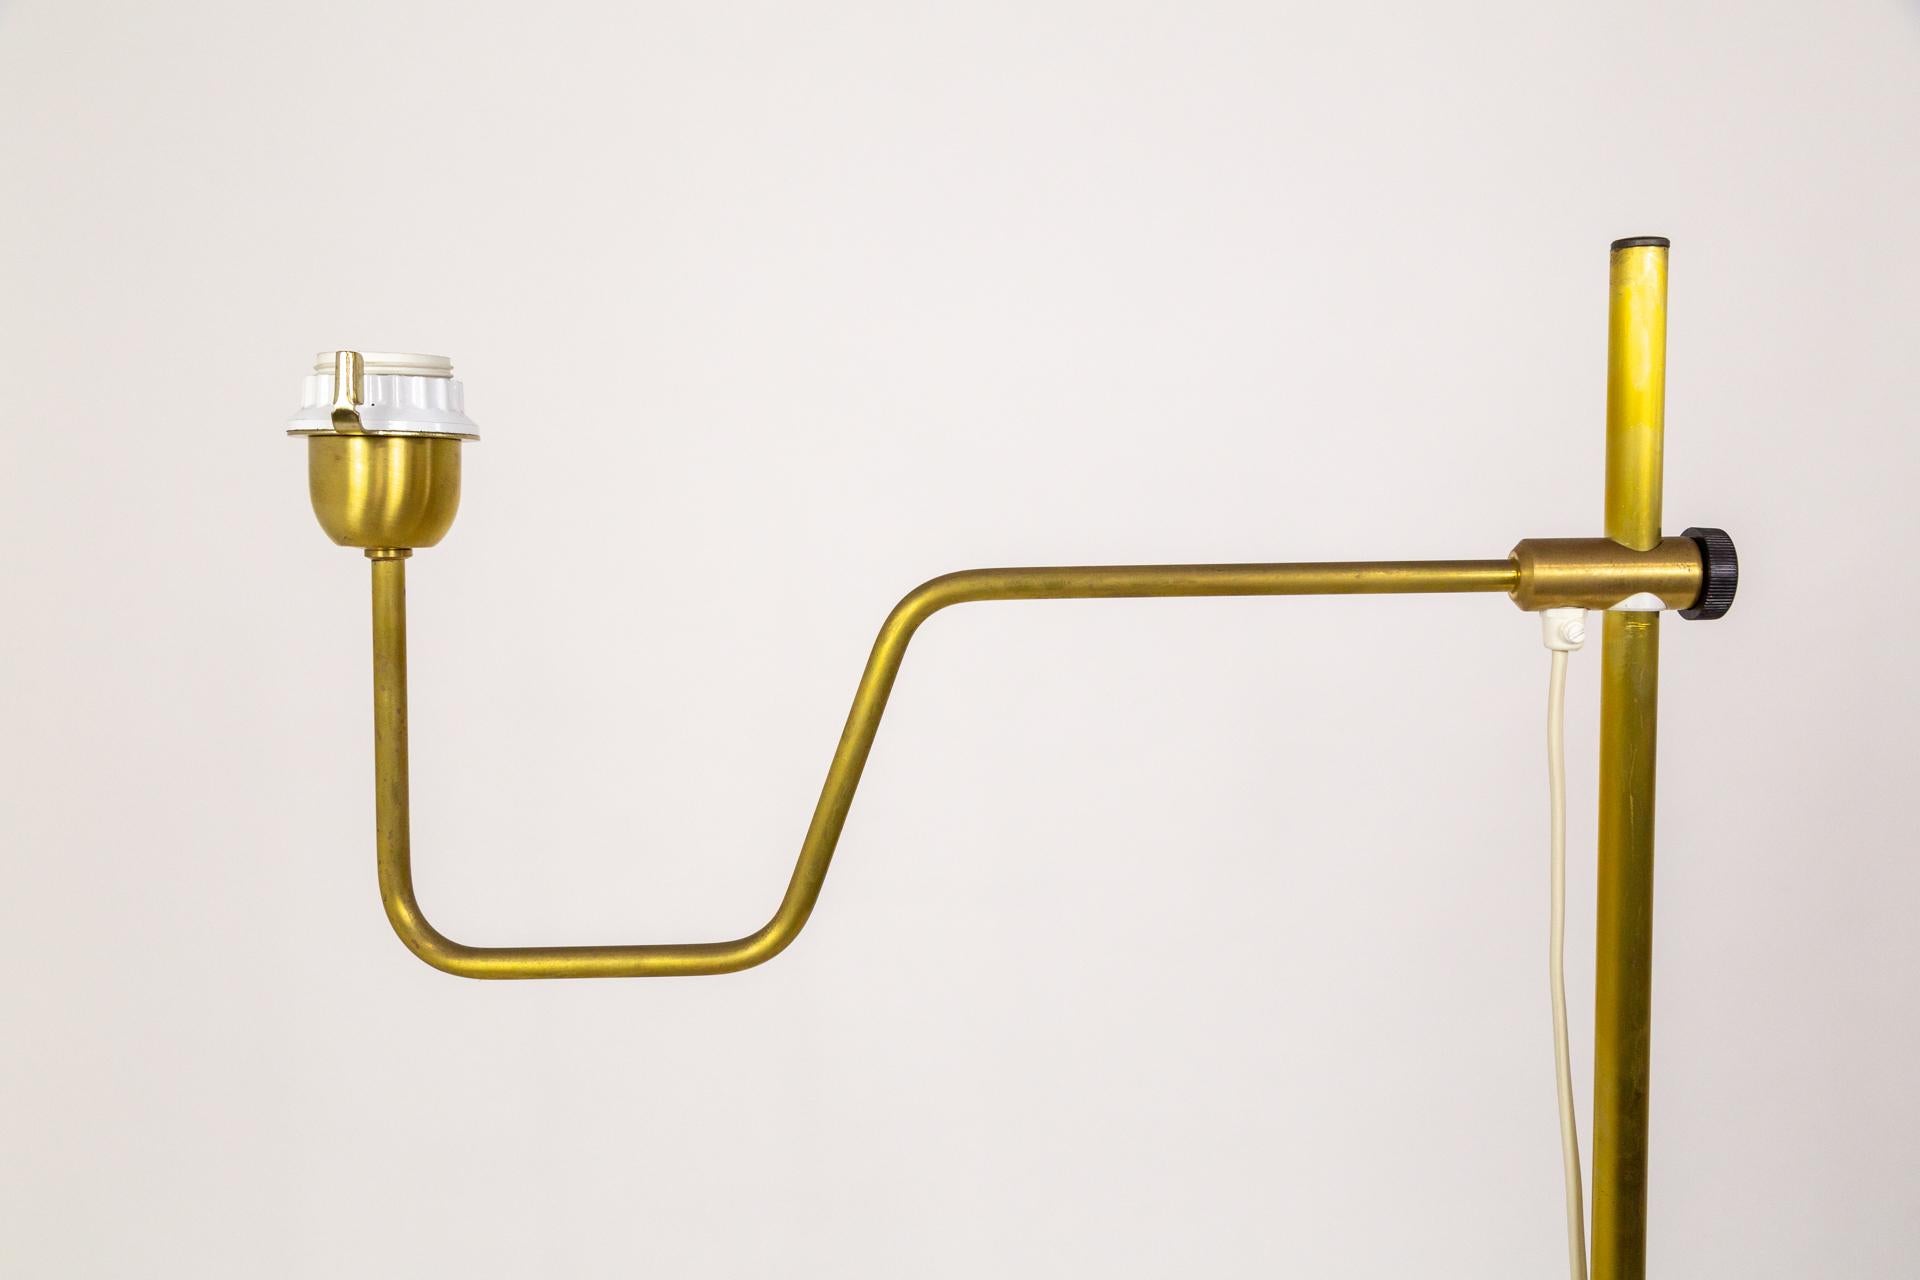 Paire de lampadaires réglables en laiton de Design/One en Suède, conçus par Hans Agnes Jakobsson au milieu du 20e siècle. (autocollant du fabricant sur le fond). 

Hauteur : 67 in (170.18 cm)
Largeur : 25 in (63,5 cm)
Profondeur : 13 in (33,02 cm)